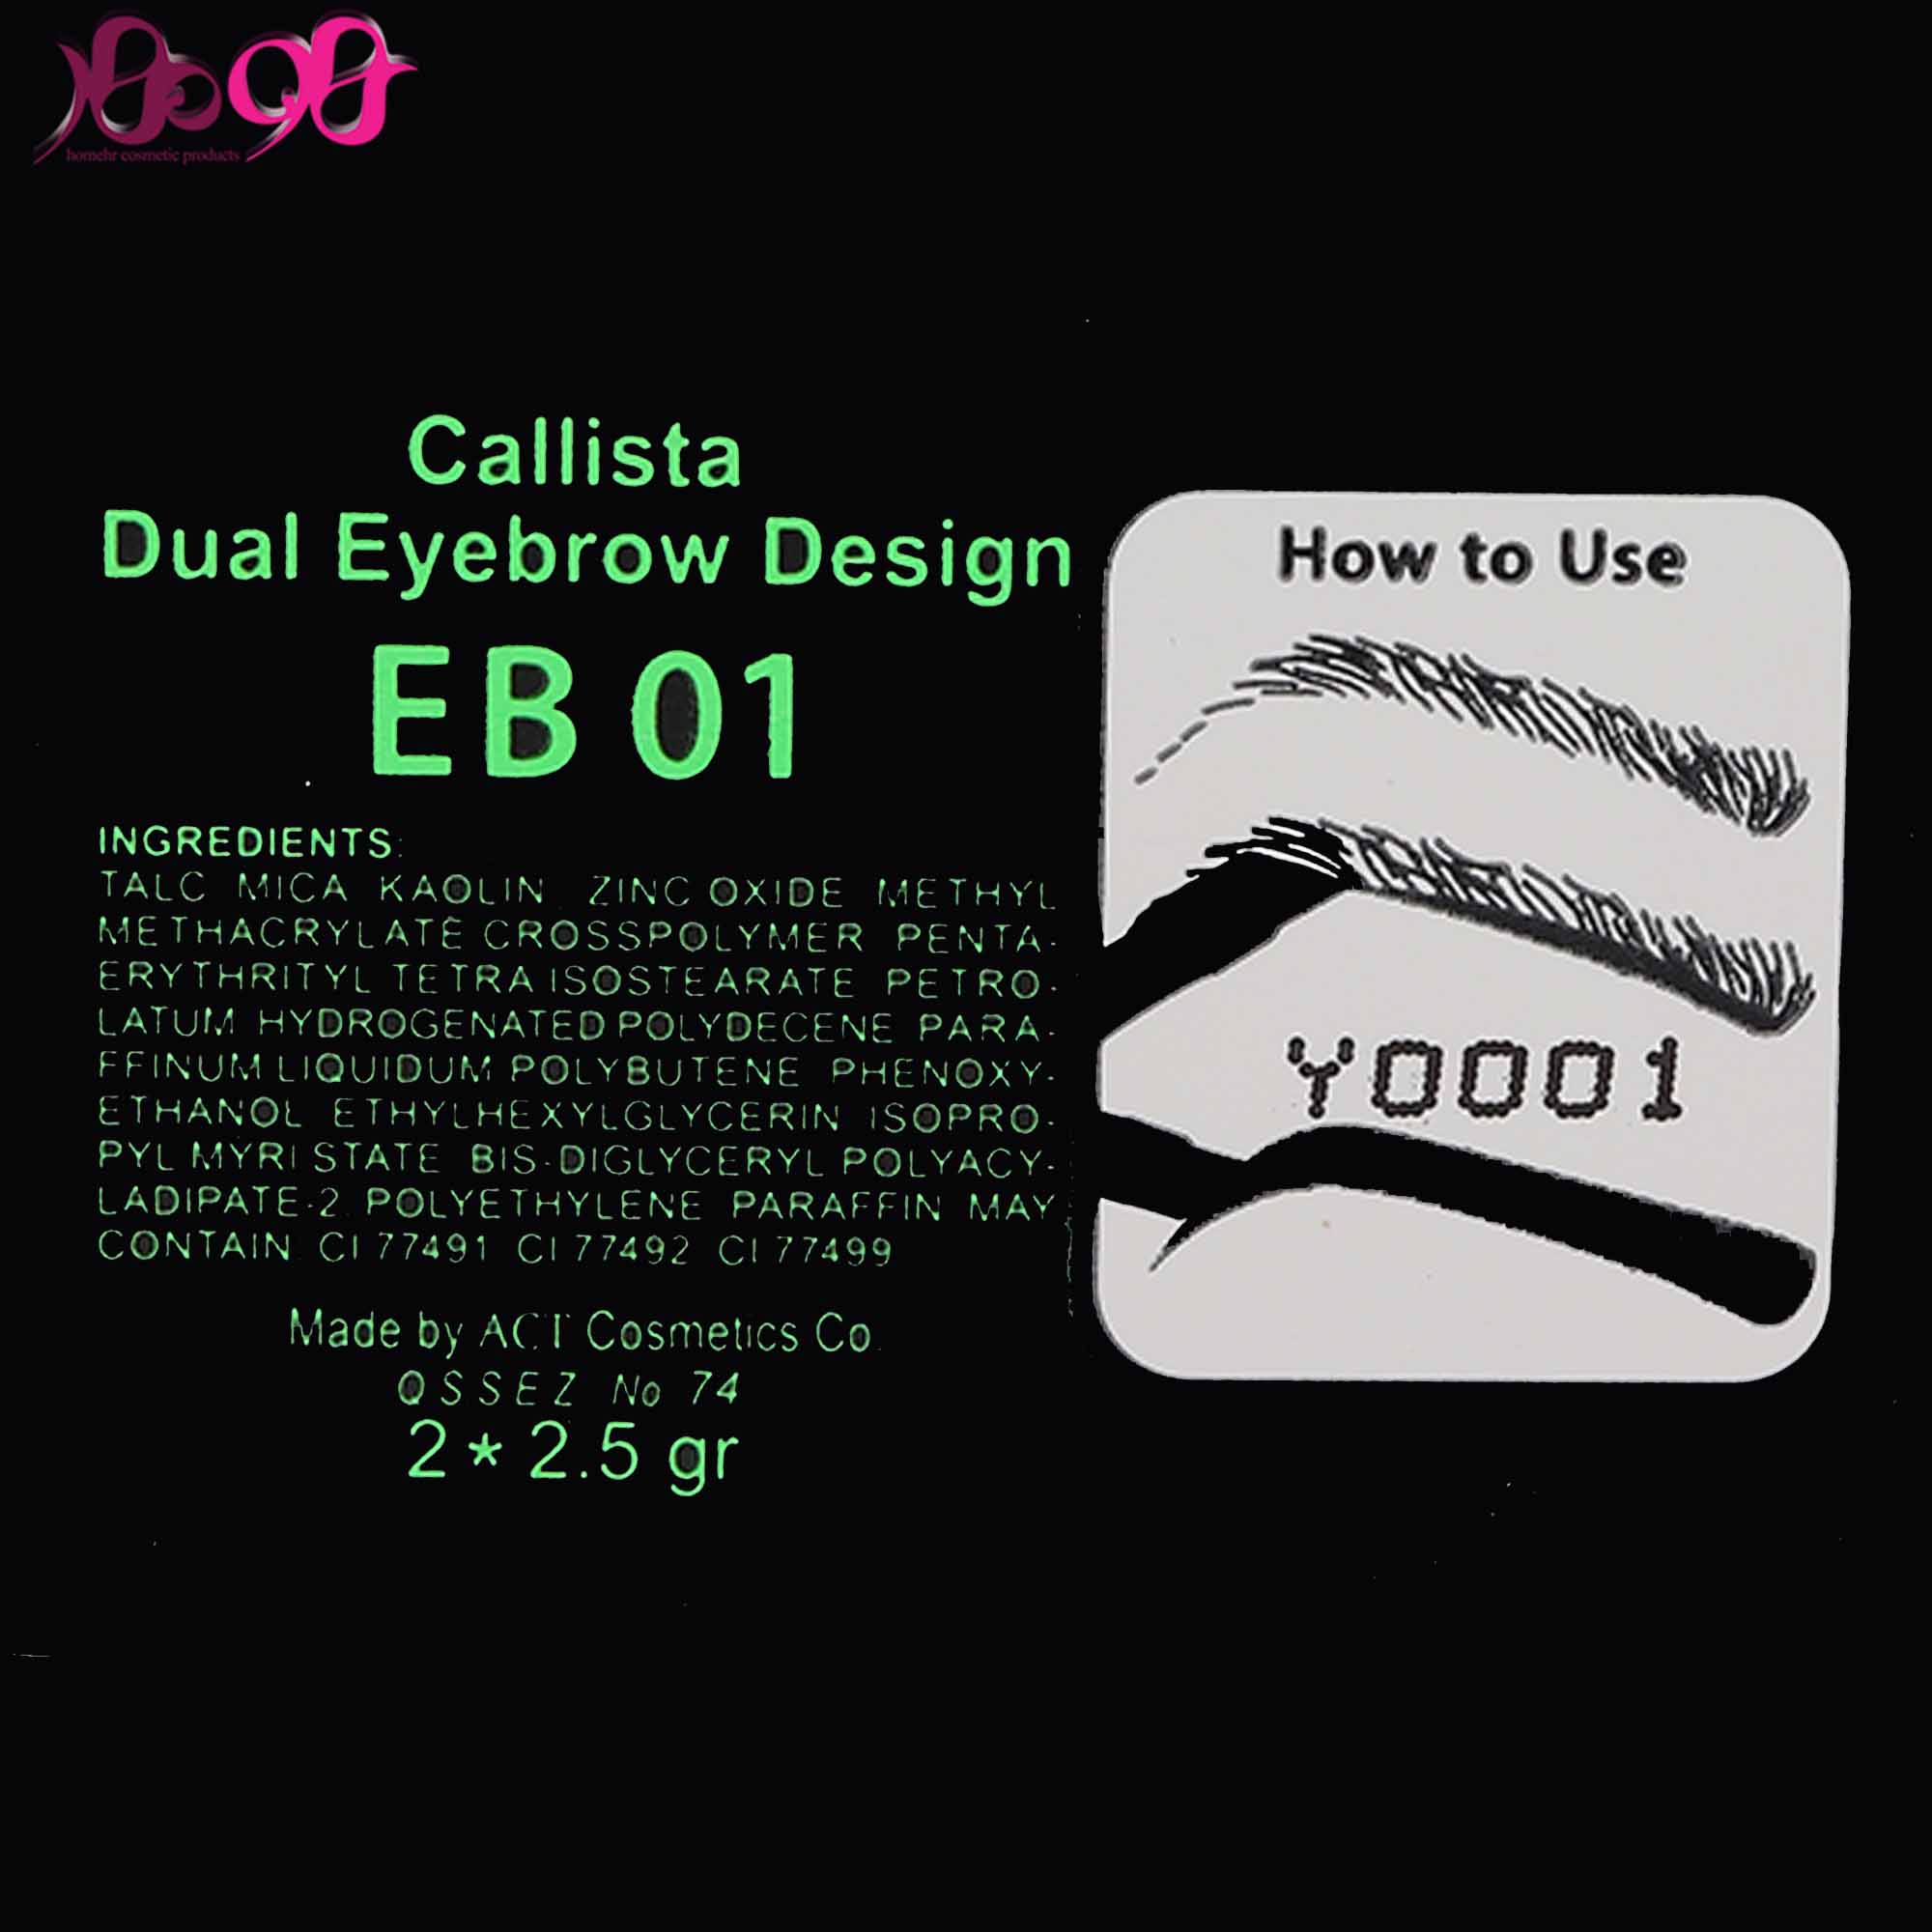 سایه-ابرو-دوتایی-کالیستا-شماره-eb01-حجم-25-گرم-calista